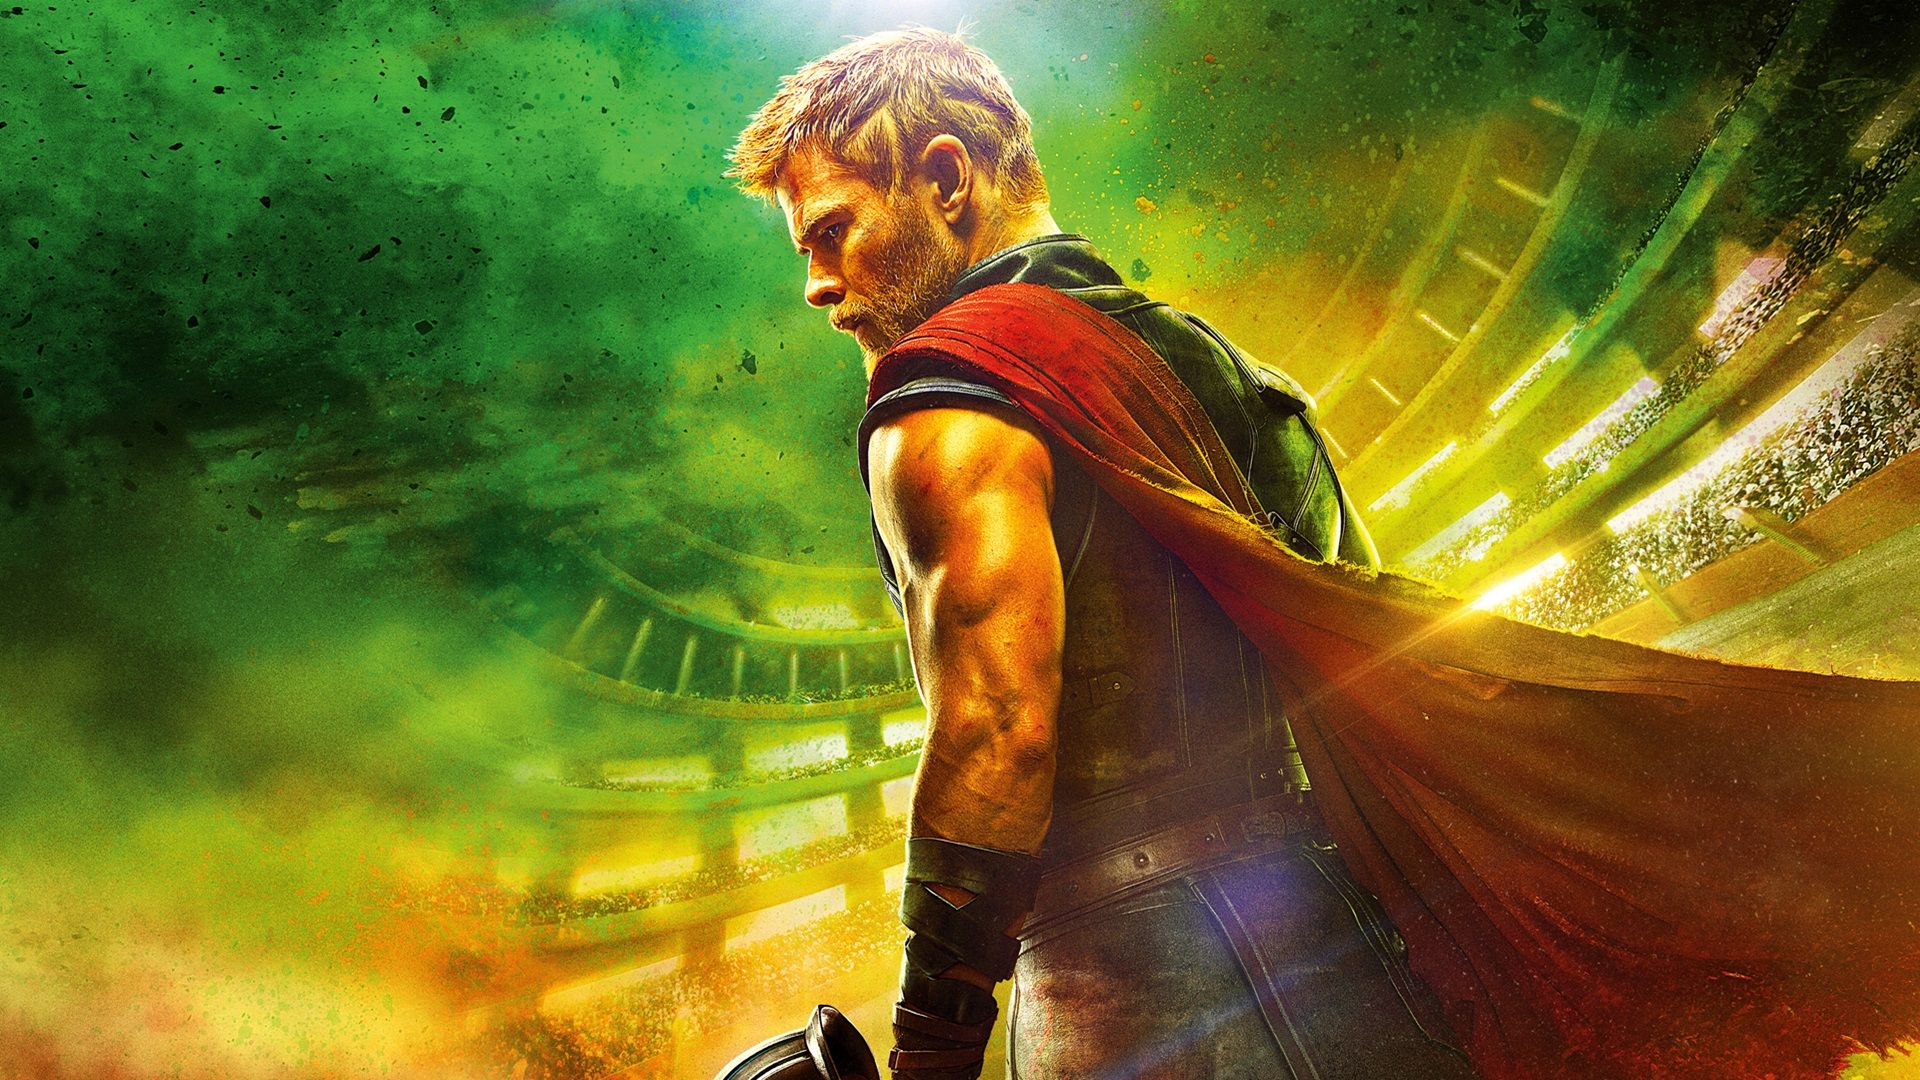 Chris Hemsworth as Thor in Raganrok